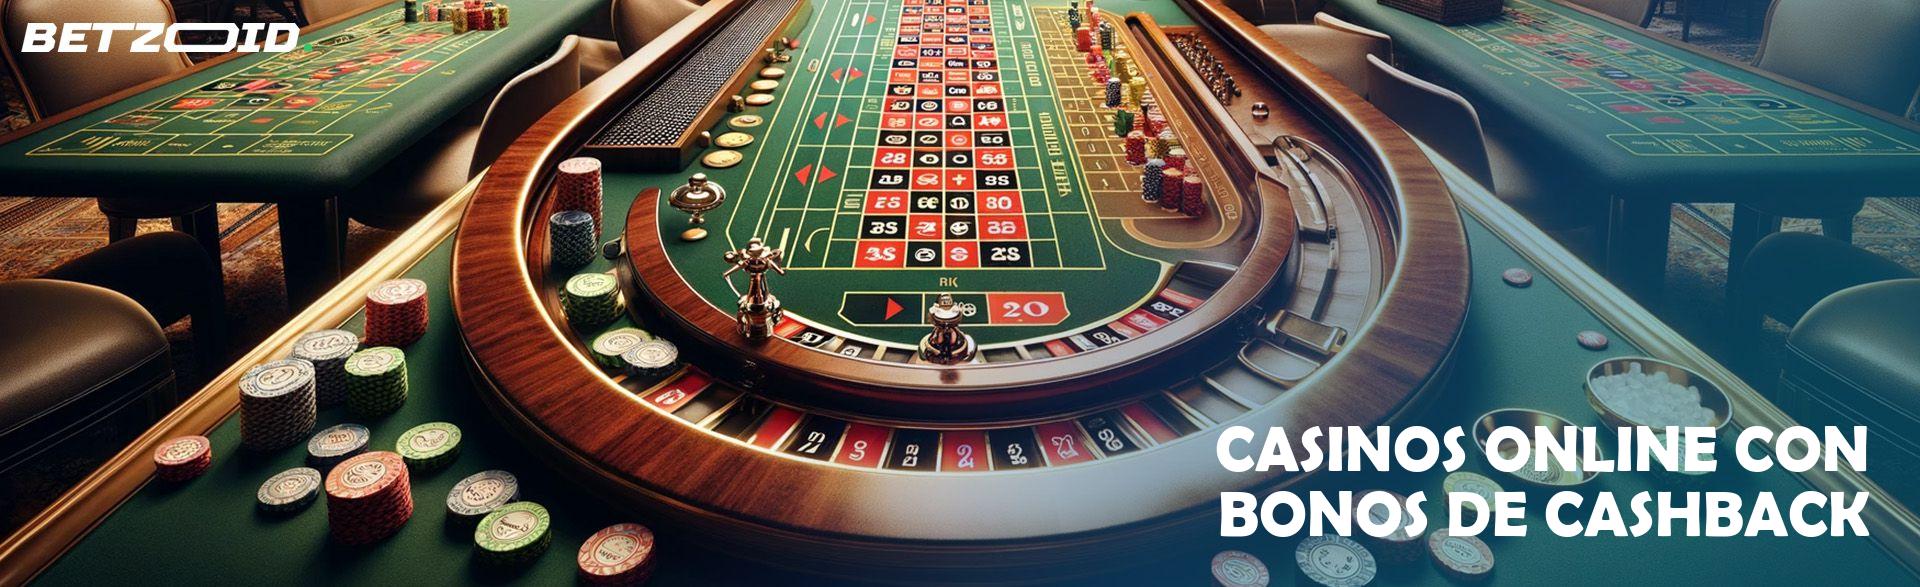 Bonos de cashback en viajes para jugadores de casino